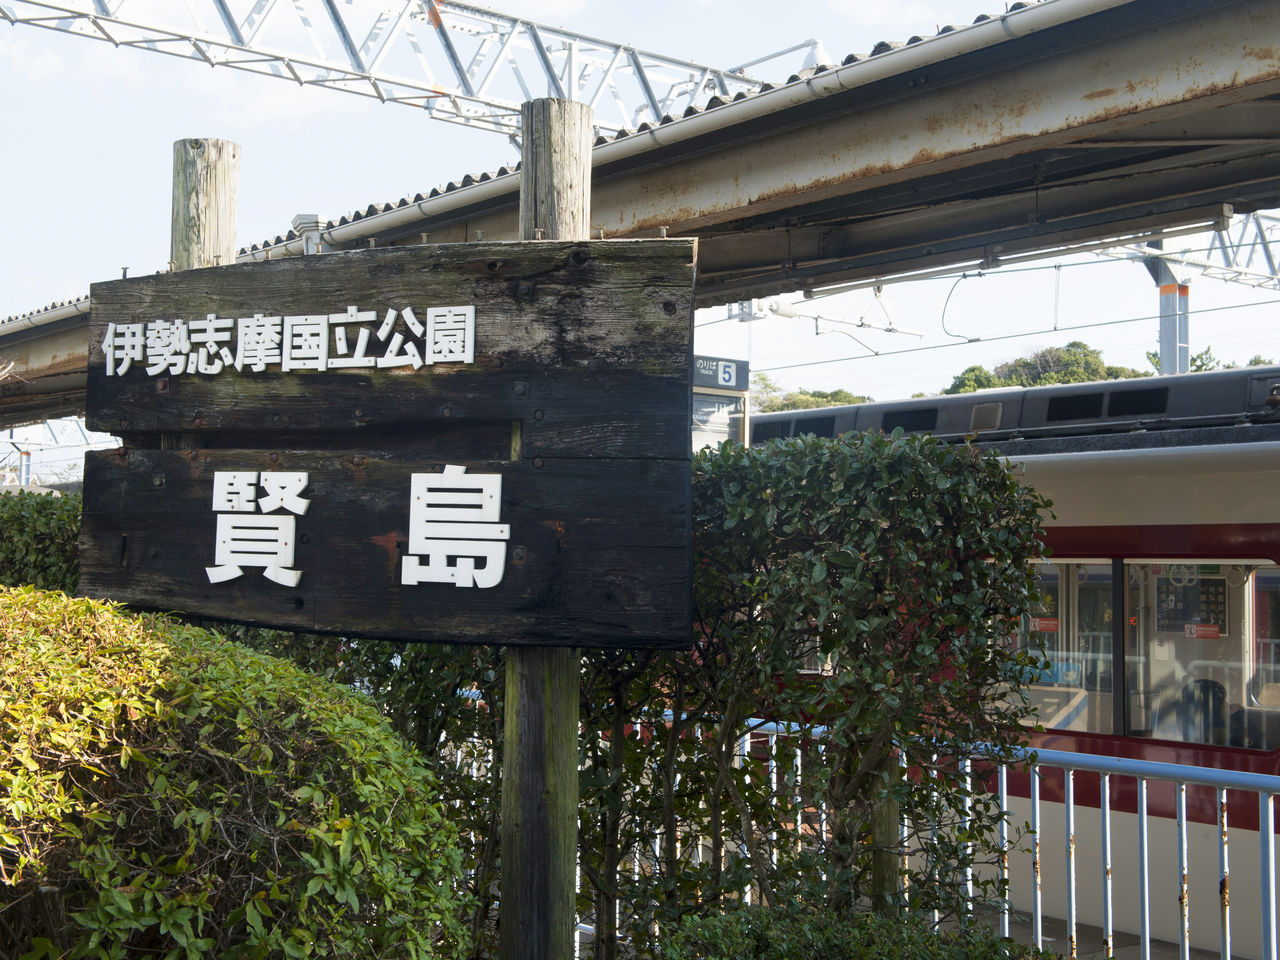 Станция Касикодзима на линии Кинтэцу. На платформе можно увидеть ​​коллективную фотографию с саммита G7 в Исэ-Симе